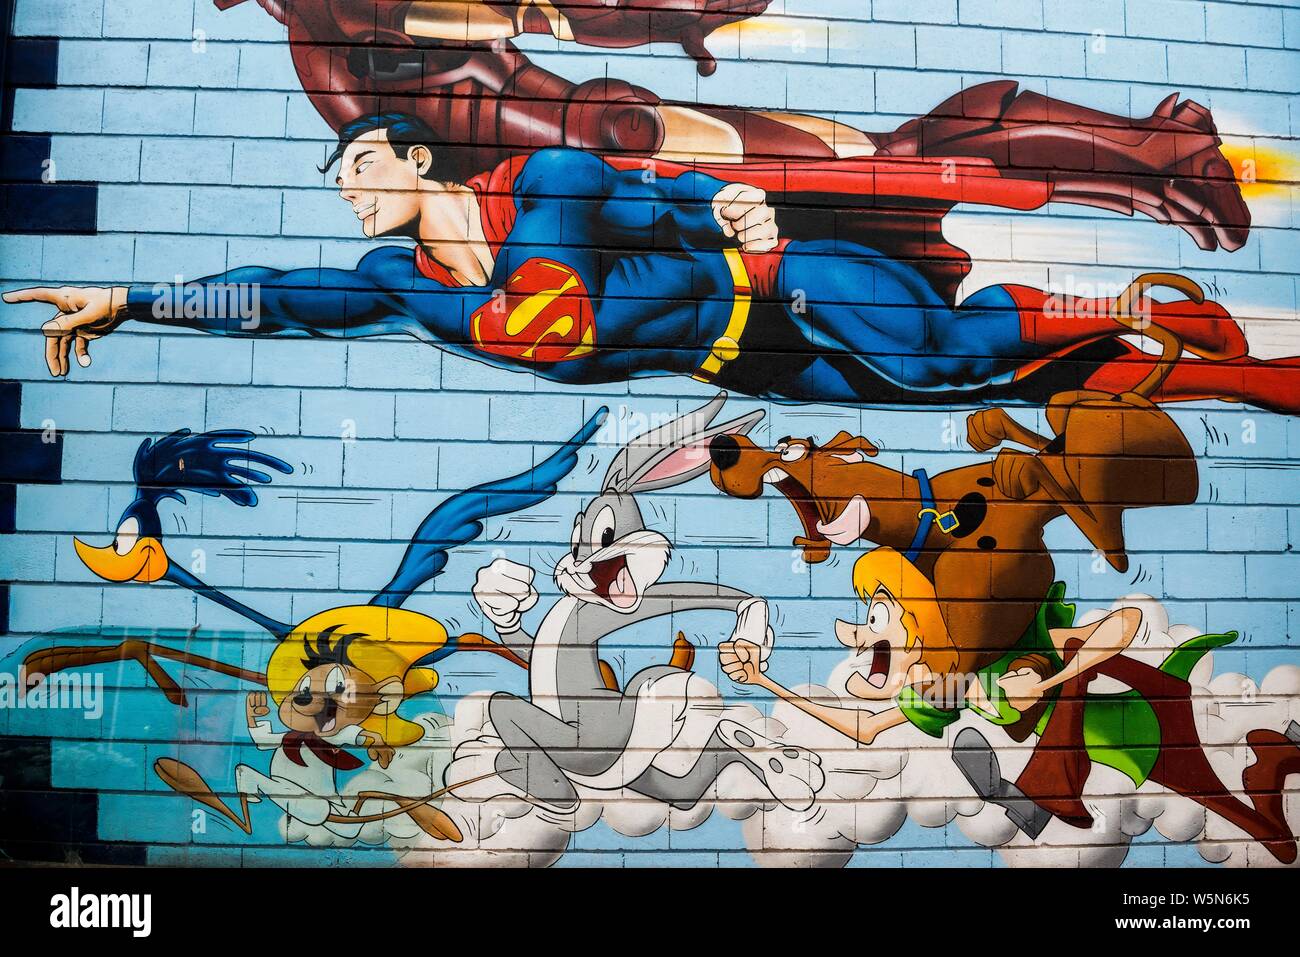 Maison peint mur avec des personnages de dessins animés, Speedy Conzales, Bugs Bunny, Superman, Graffiti, Porte de Clignancourt, Paris, France Banque D'Images